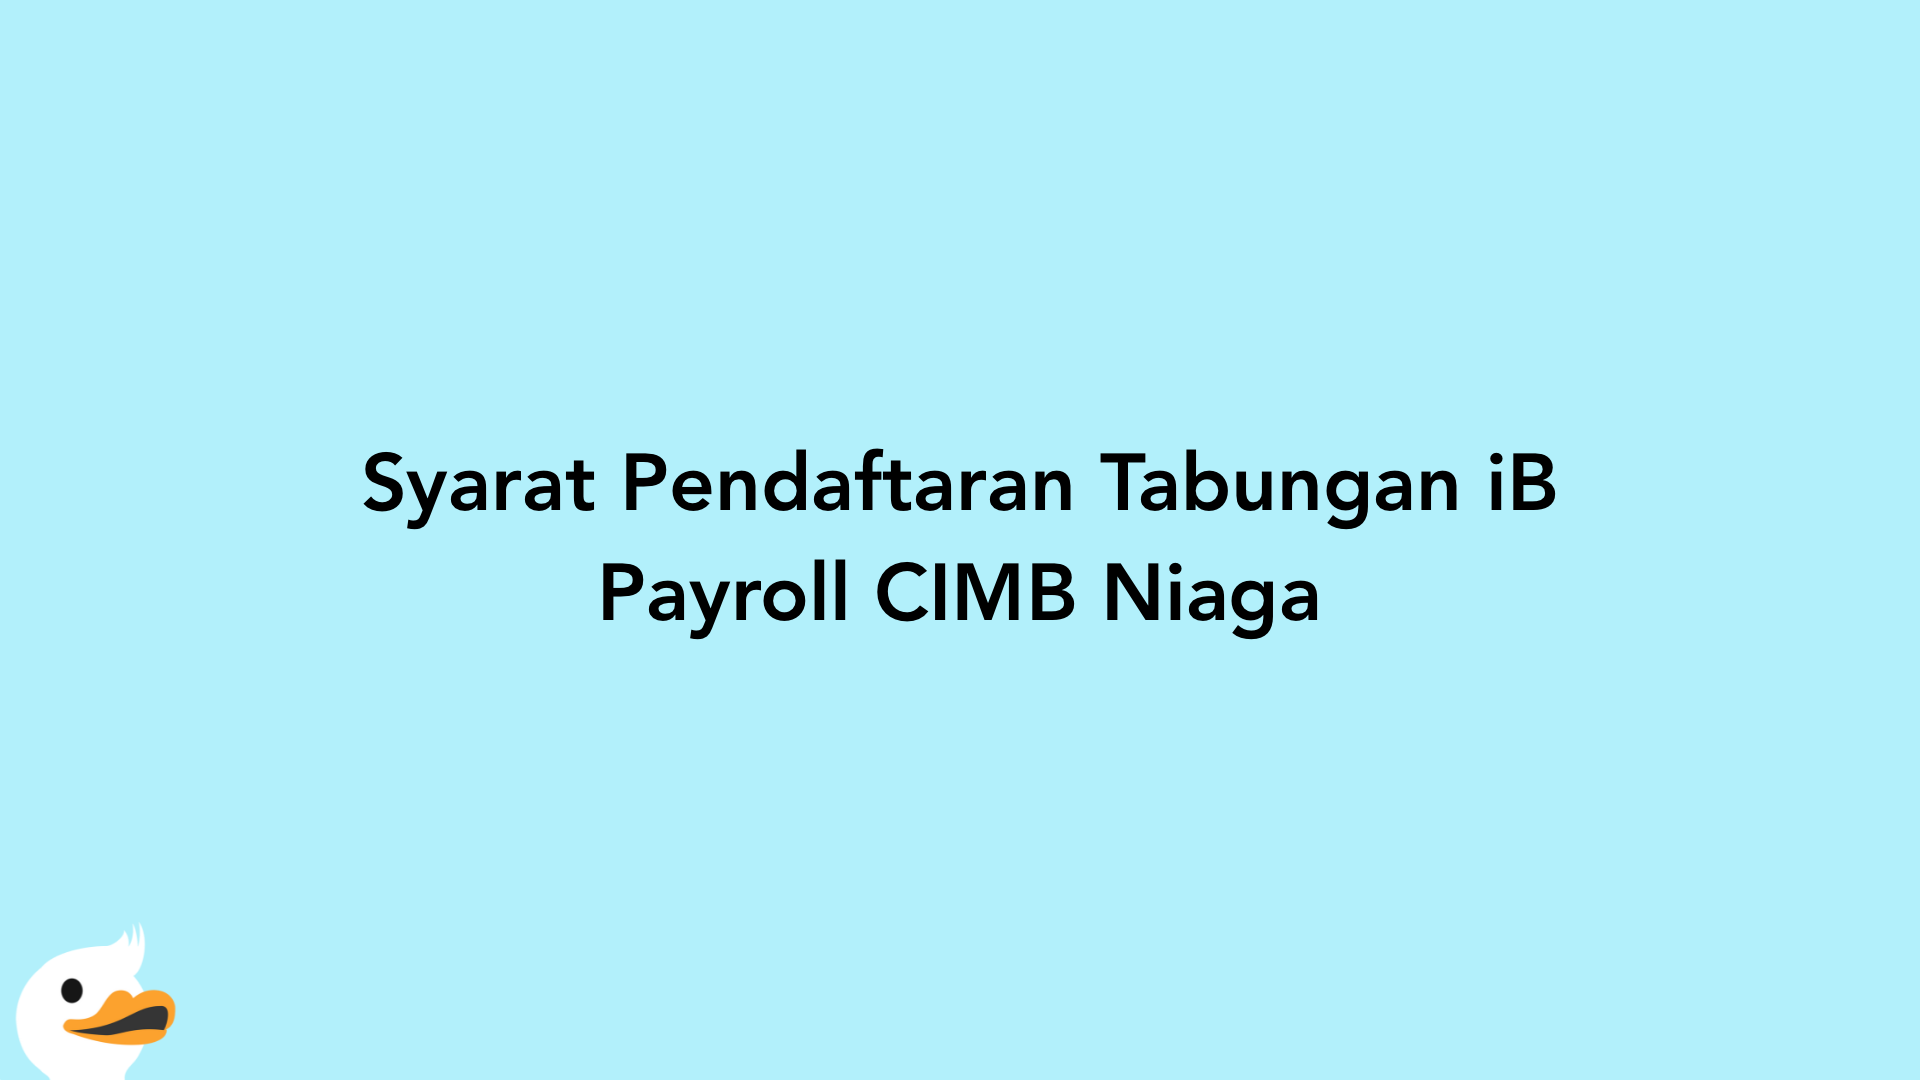 Syarat Pendaftaran Tabungan iB Payroll CIMB Niaga